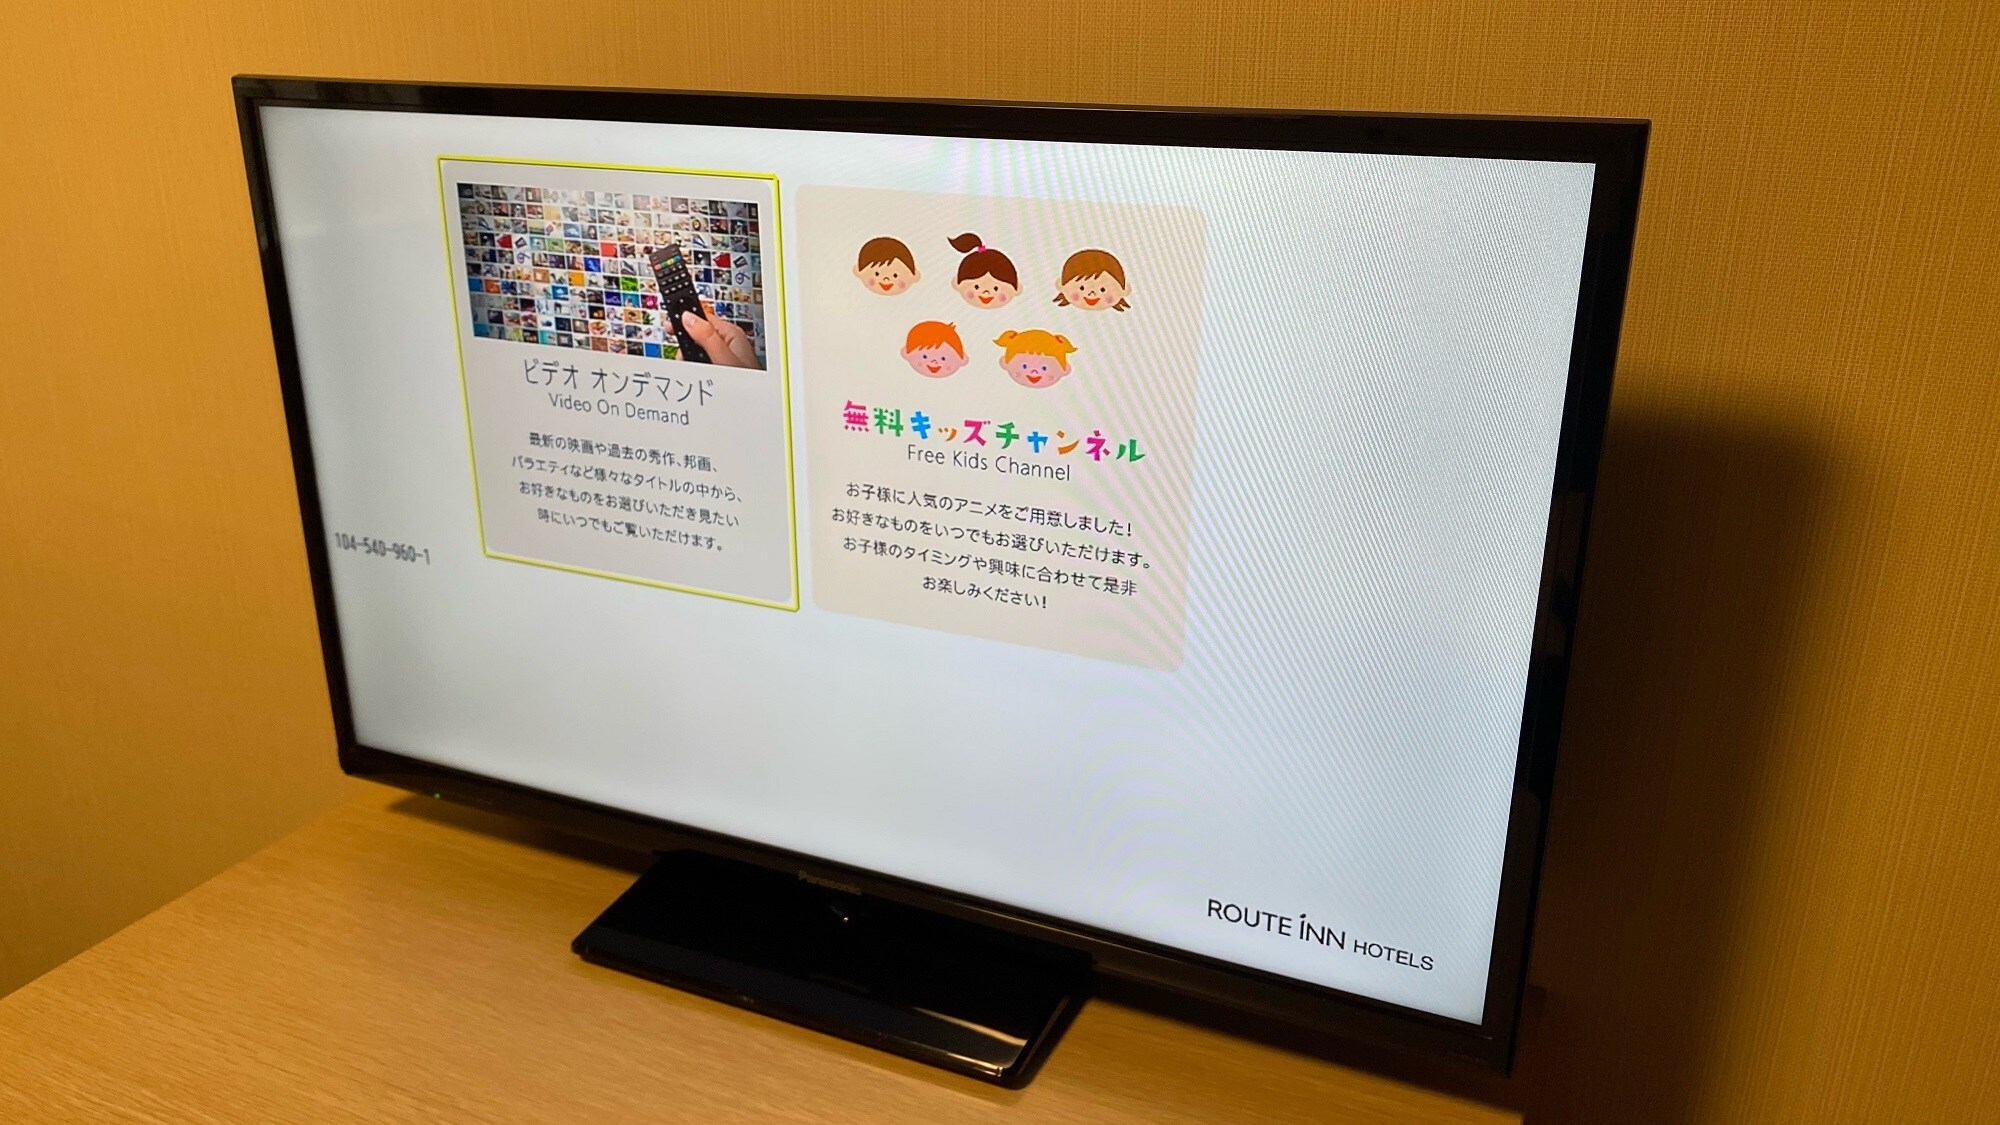 32-inch LCD TV